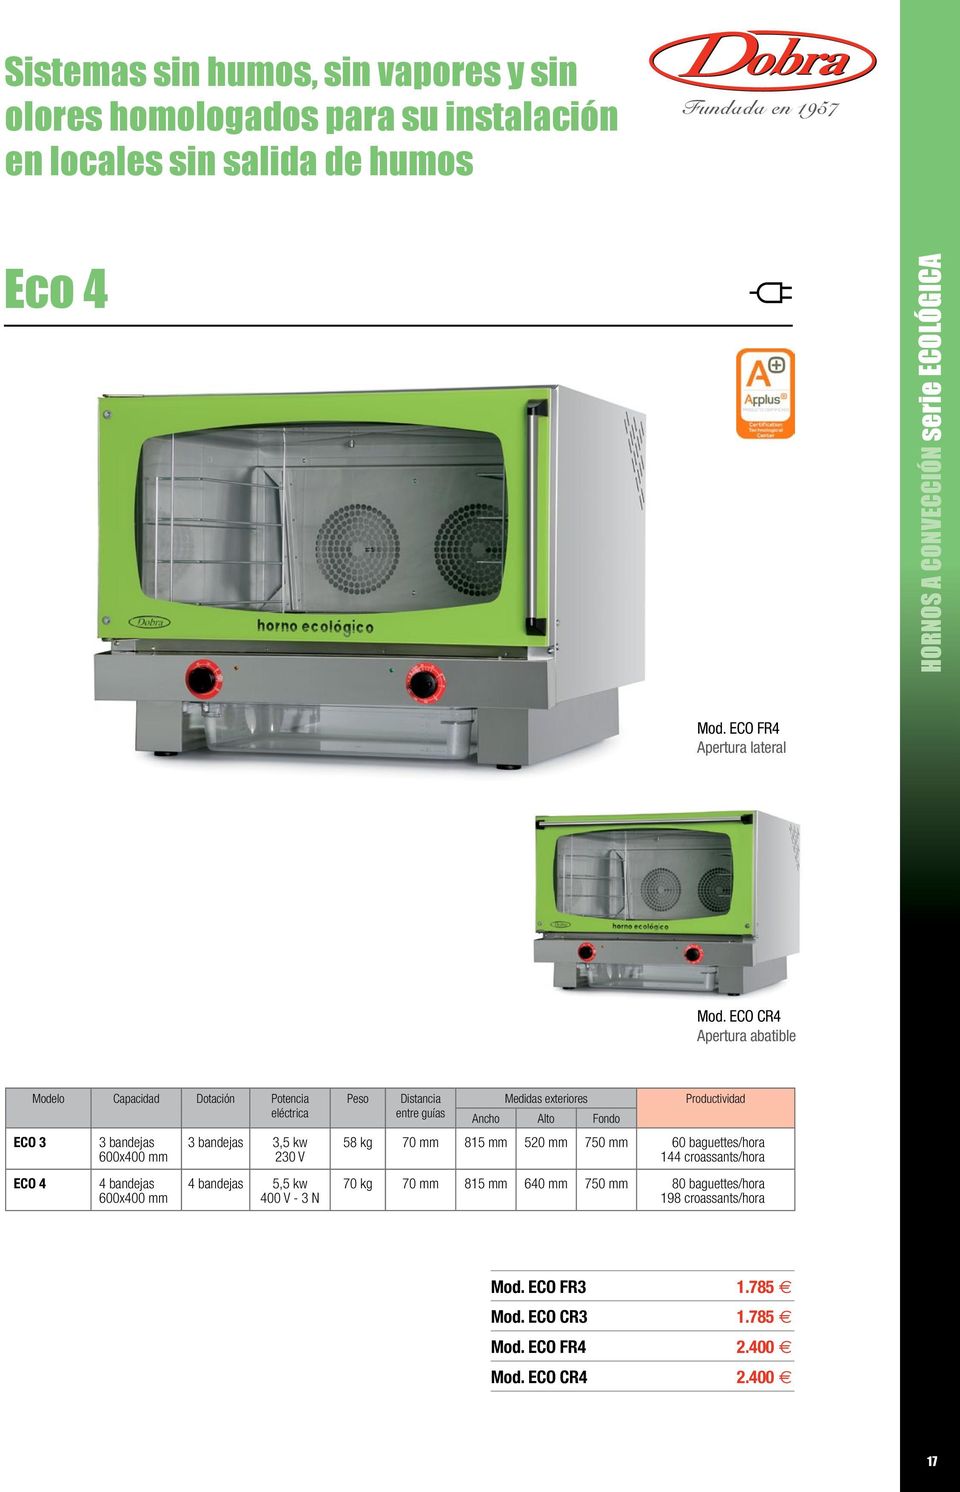 ECO CR4 Apertura abatible ECO 3 ECO 4 Modelo Capacidad Dotación Potencia eléctrica 3 bandejas 4 bandejas 3 bandejas 3,5 kw 230 V 4 bandejas 5,5 kw 400 V - 3 N